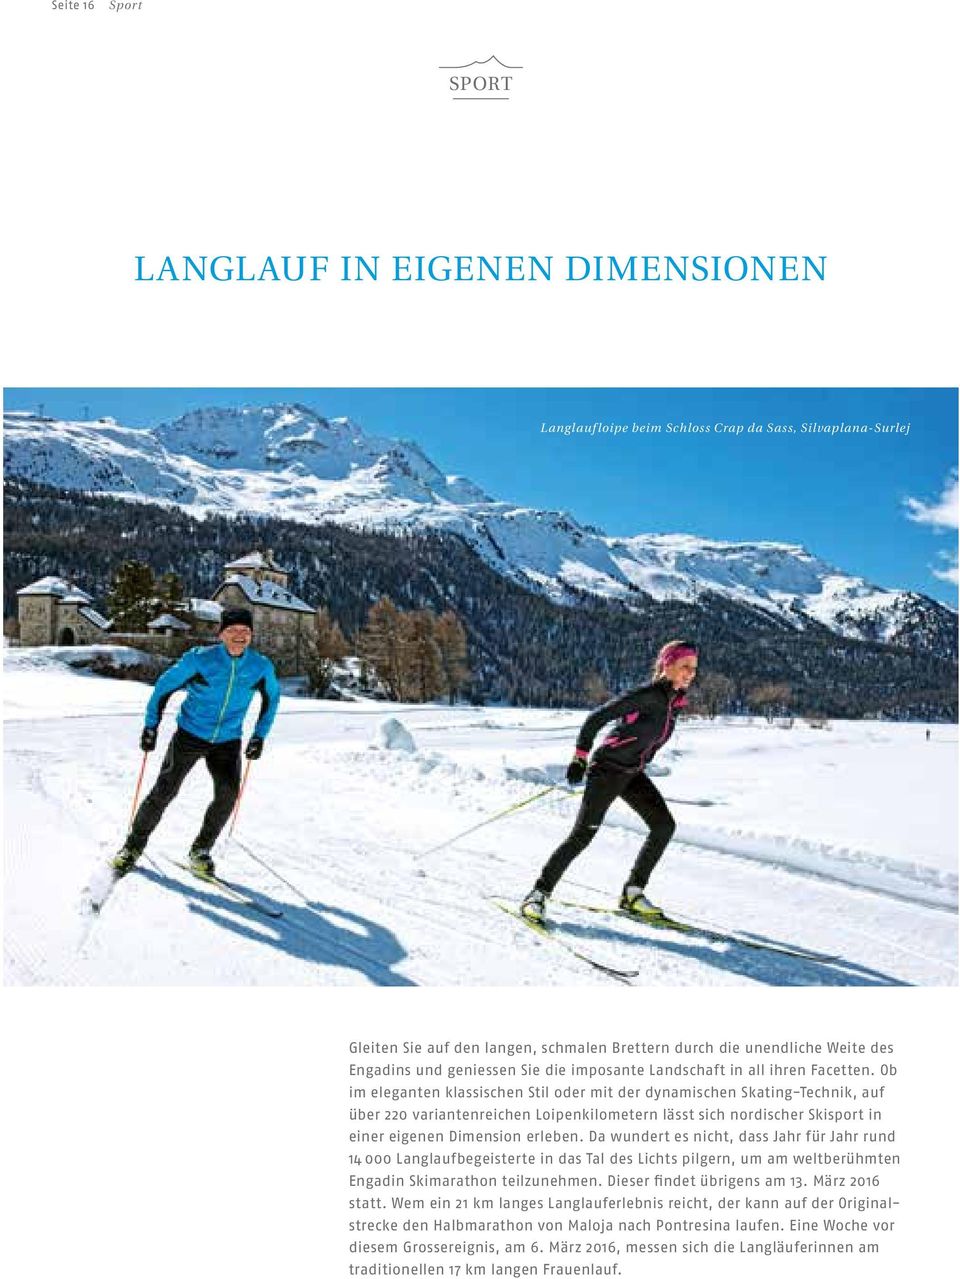 Ob im eleganten klassischen Stil oder mit der dynamischen Skating-Technik, auf über 220 variantenreichen Loipenkilometern lässt sich nordischer Skisport in einer eigenen Dimension erleben.